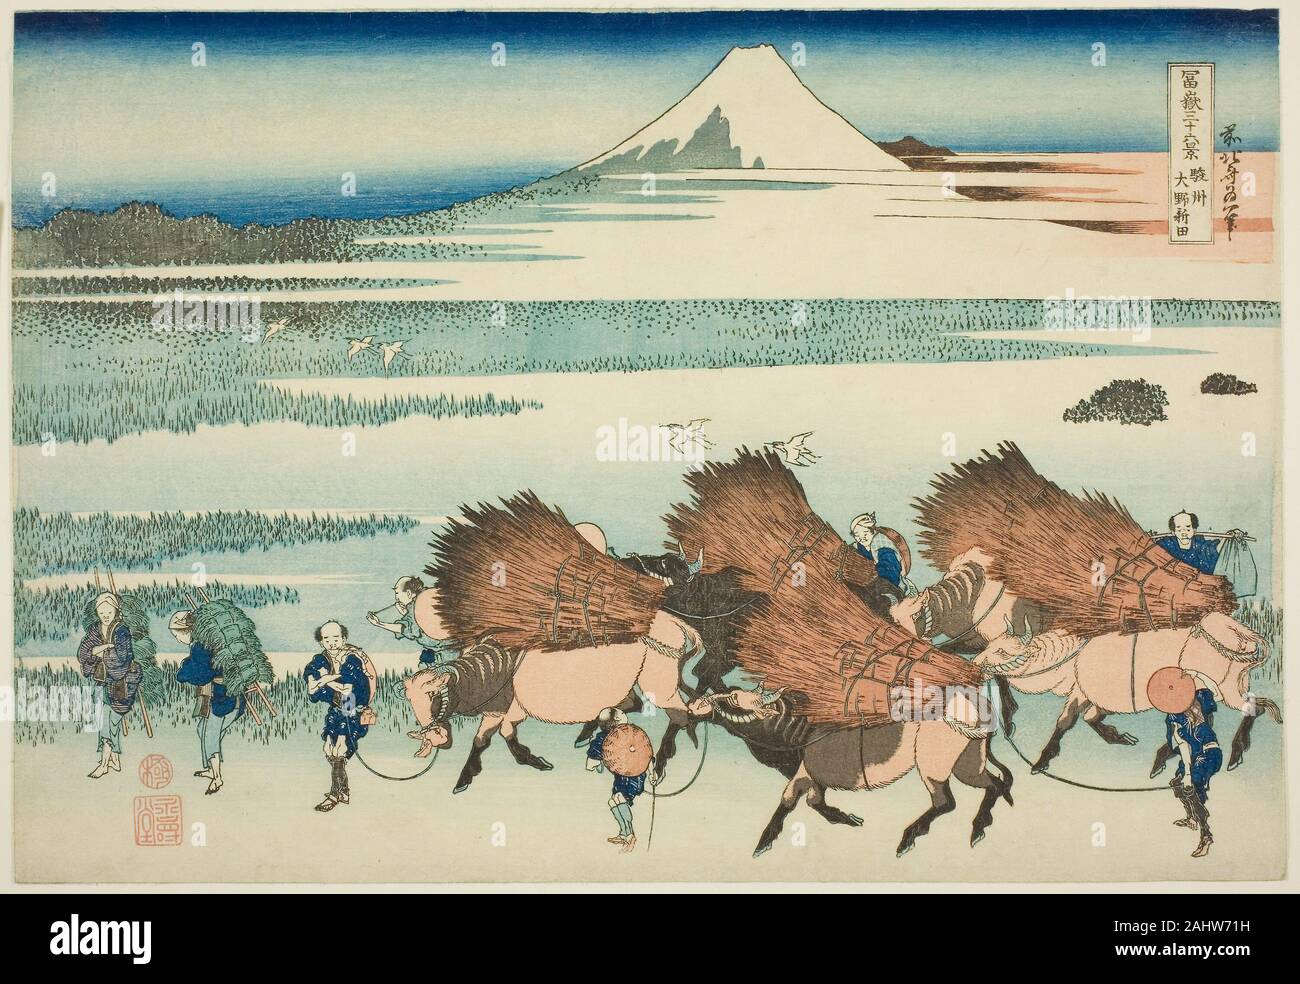 Katsushika Hokusai. Risaie a Ono nella provincia di Suruga (Sunshu shinden Ono), dalla serie trentasei vedute del Monte Fuji (Fugaku sanjurokkei). 1825-1838. Il Giappone. Colore stampa woodblock; oban Foto Stock